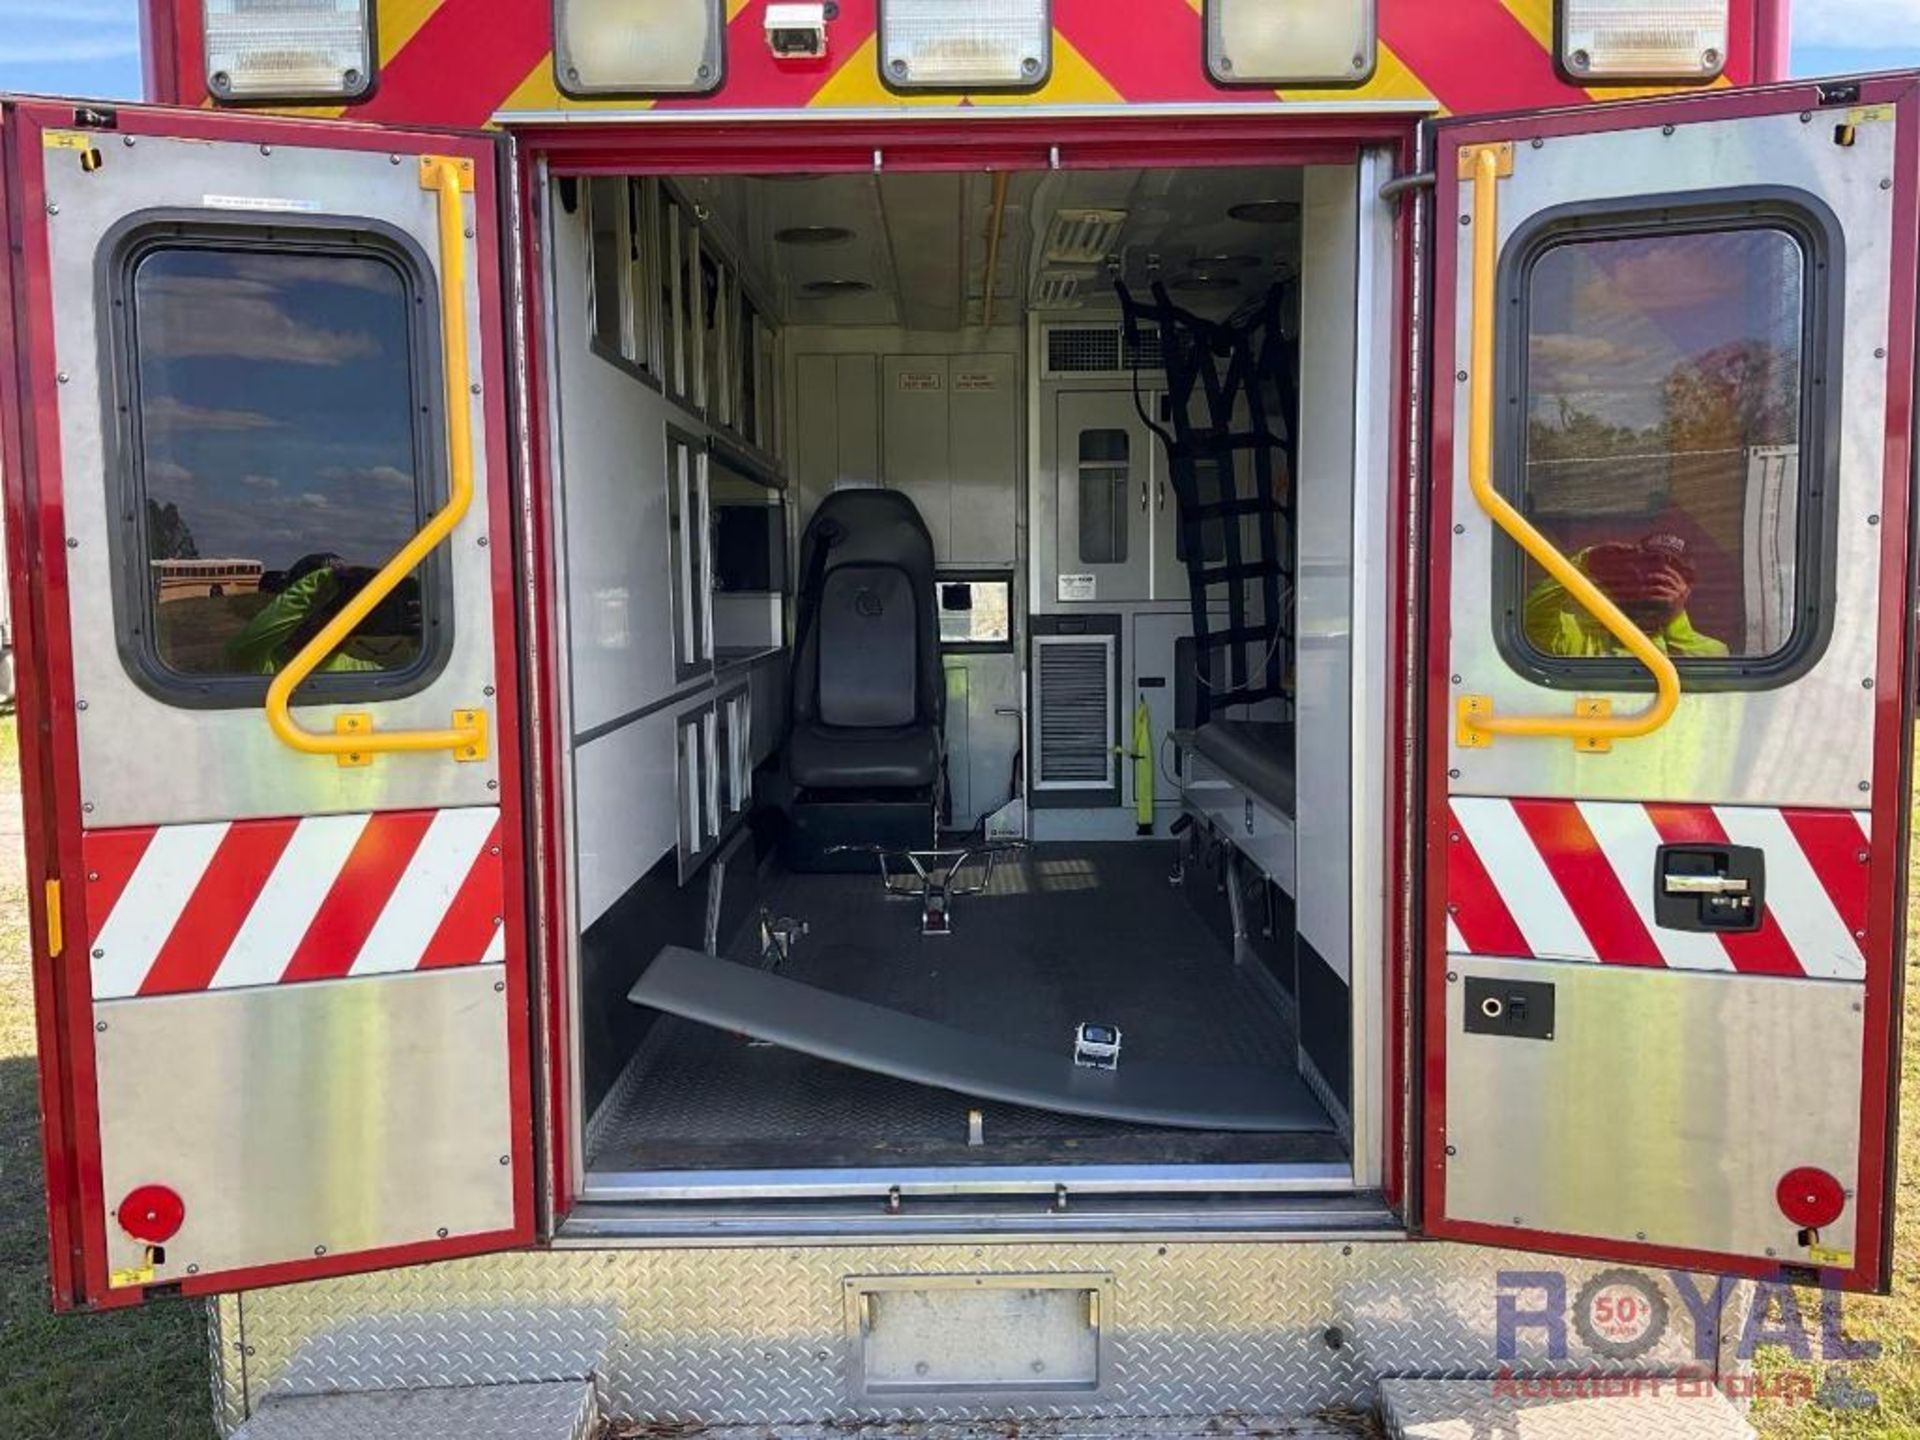 2011 Dodge Ram Ambulance - Image 13 of 30